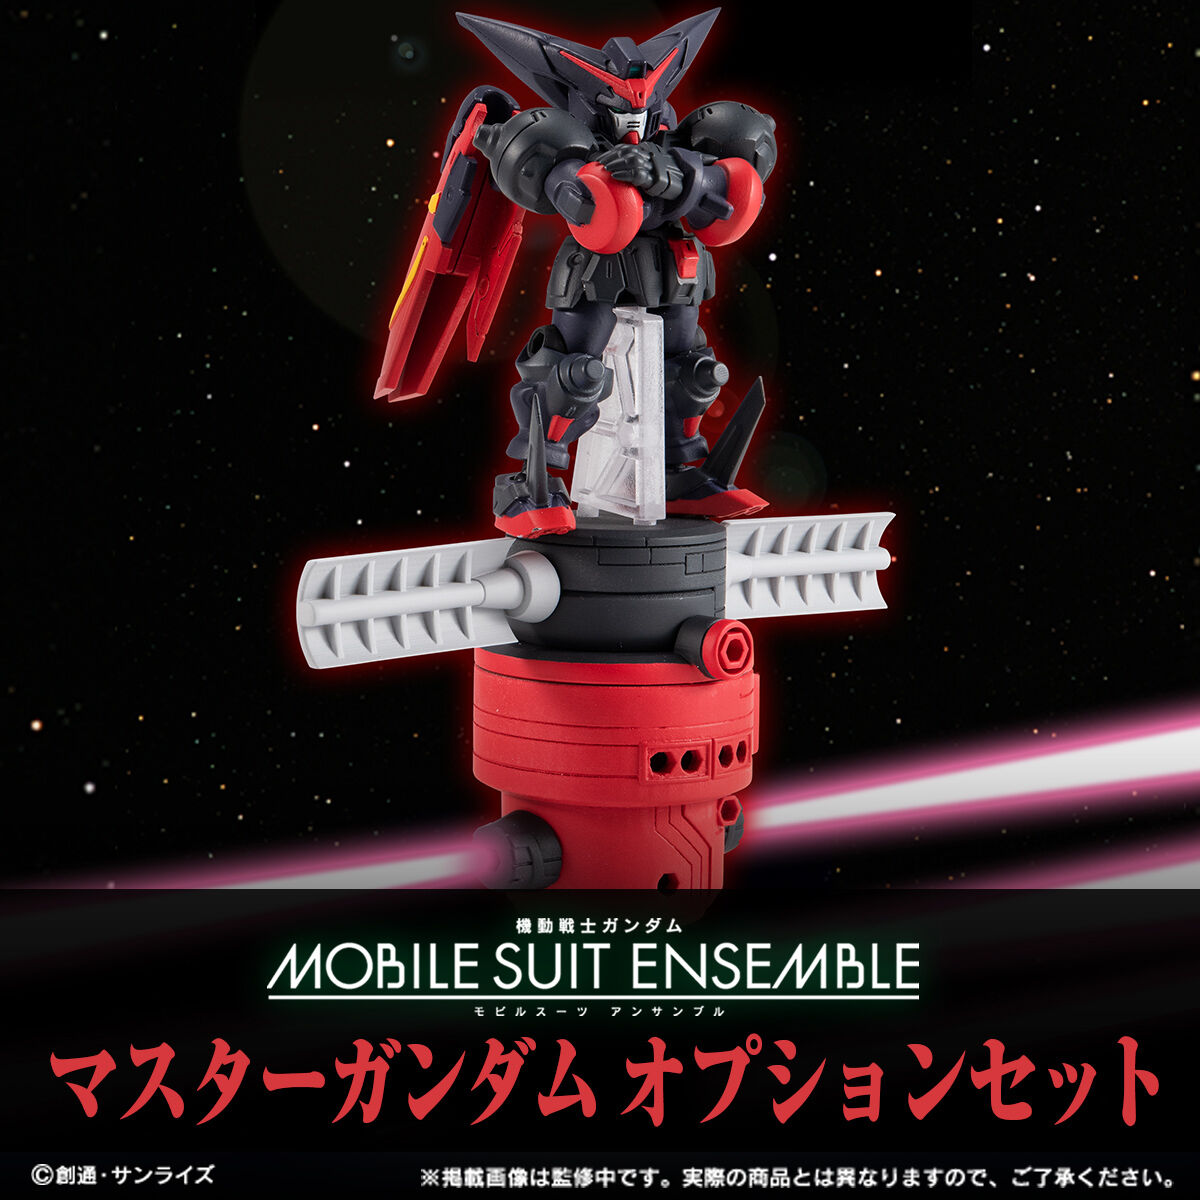 【限定販売】MOBILE SUIT ENSEMBLE EX43『ゴッドガンダム』機動武闘伝Gガンダム デフォルメ可動フィギュア-026